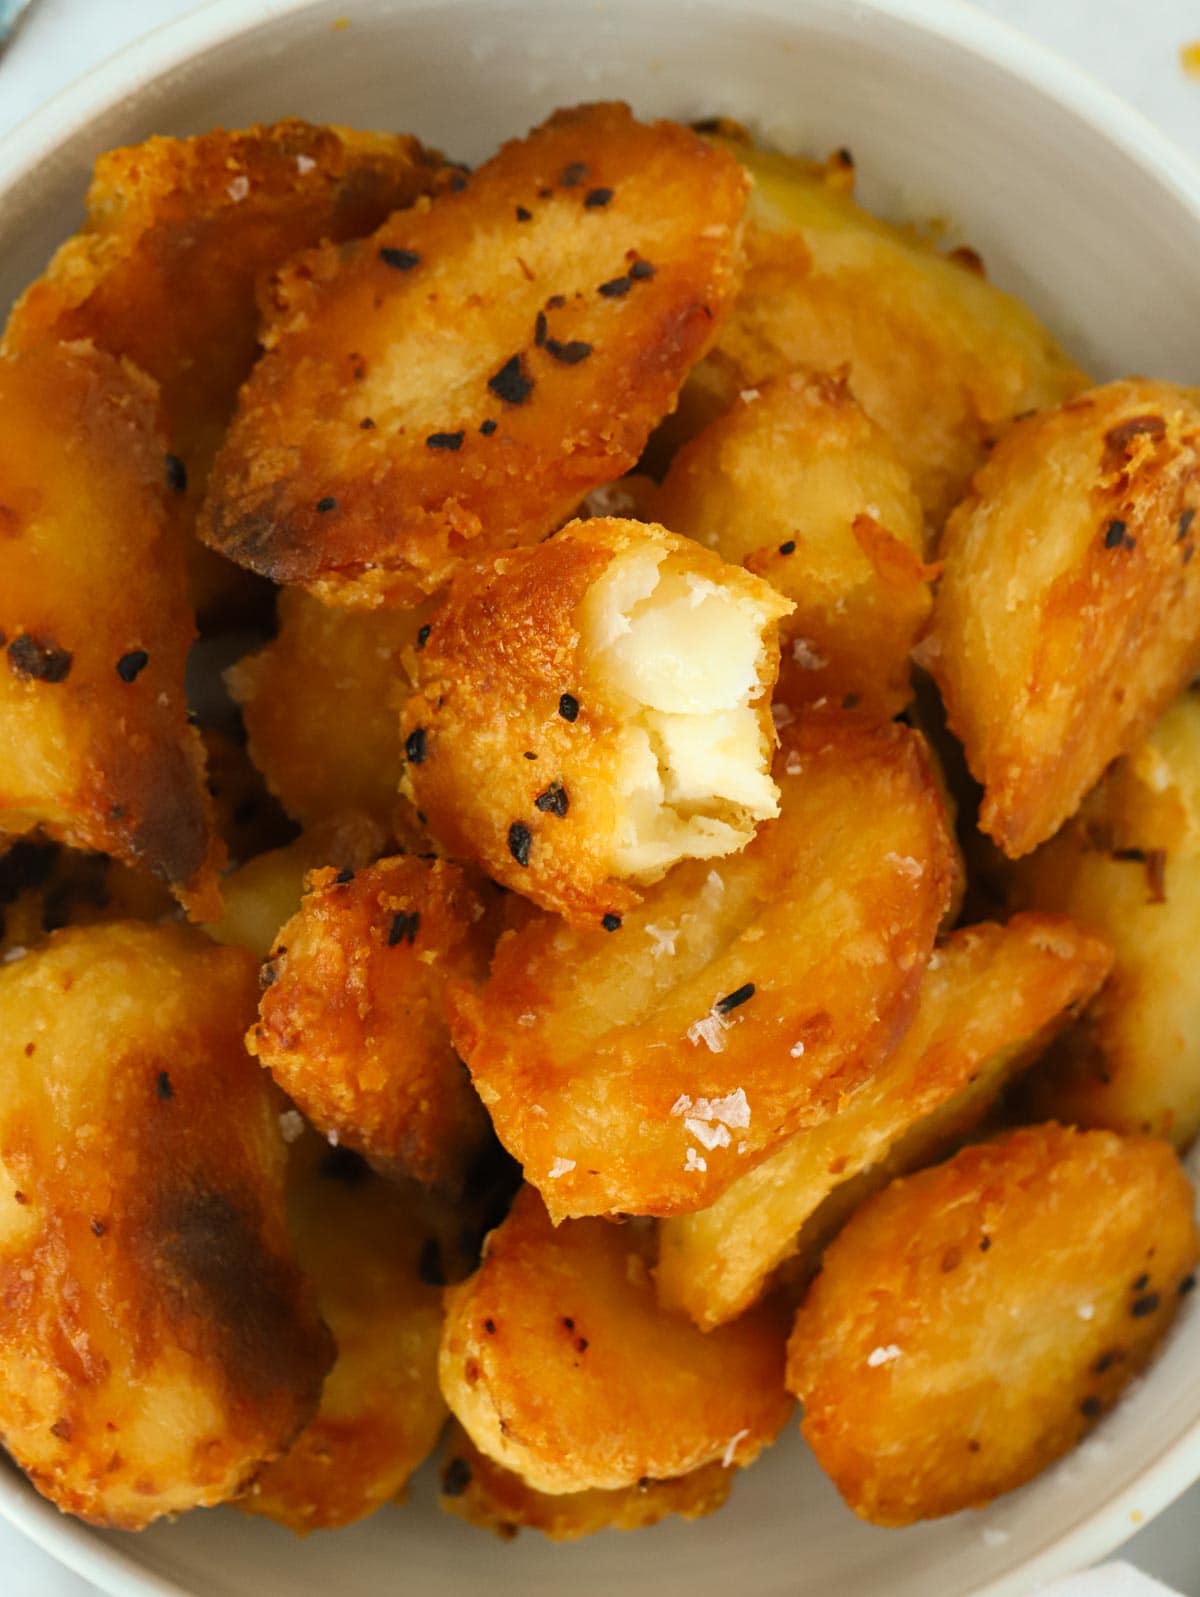 Big close up of a bowl of golden, crispy roast potatoes.